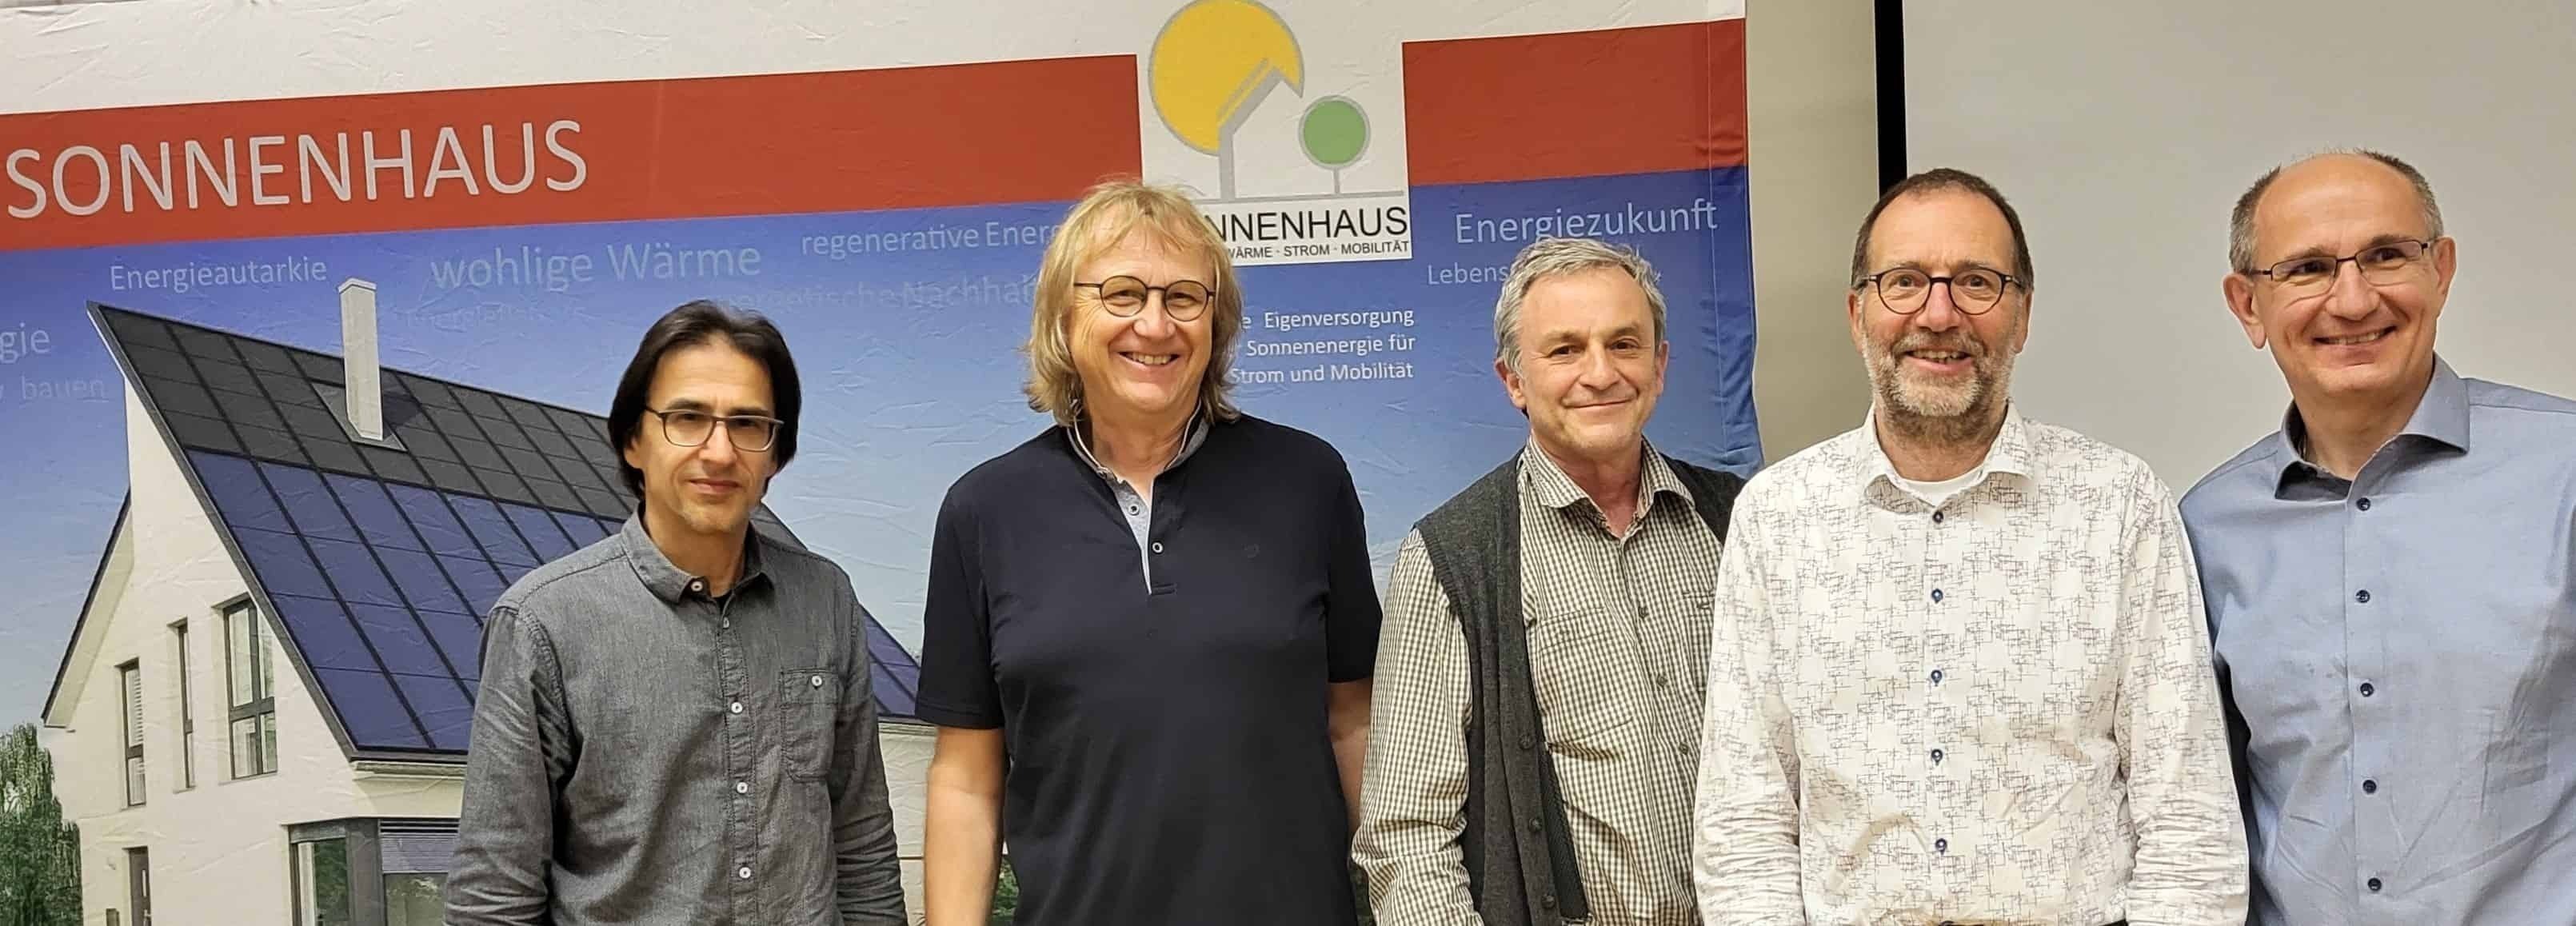 Sonnenhaus-Institut e.V.: 20 Jahre Engagement für klimaschonendes Bauen und Wohnen – „Wir bleiben Überzeugungstäter!“